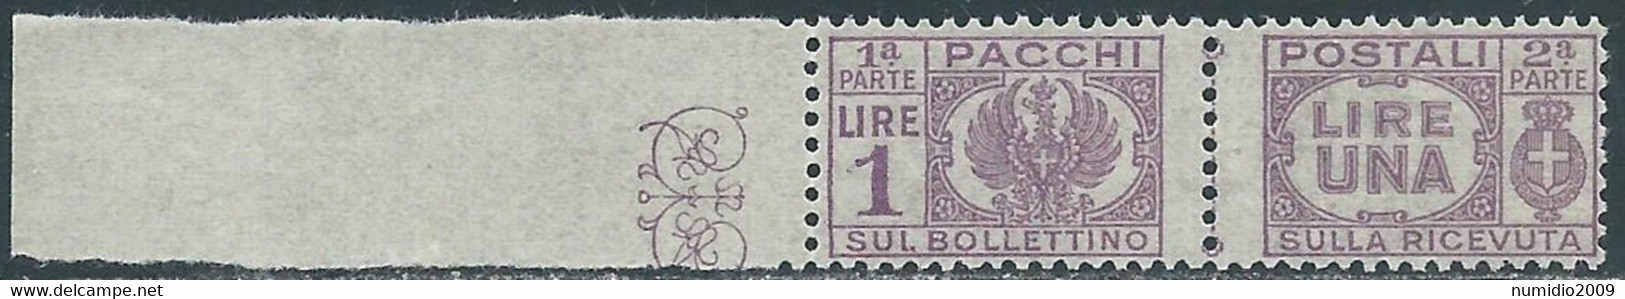 1946 LUOGOTENENZA PACCHI POSTALI 1 LIRA MNH ** - RB14-2 - Paketmarken